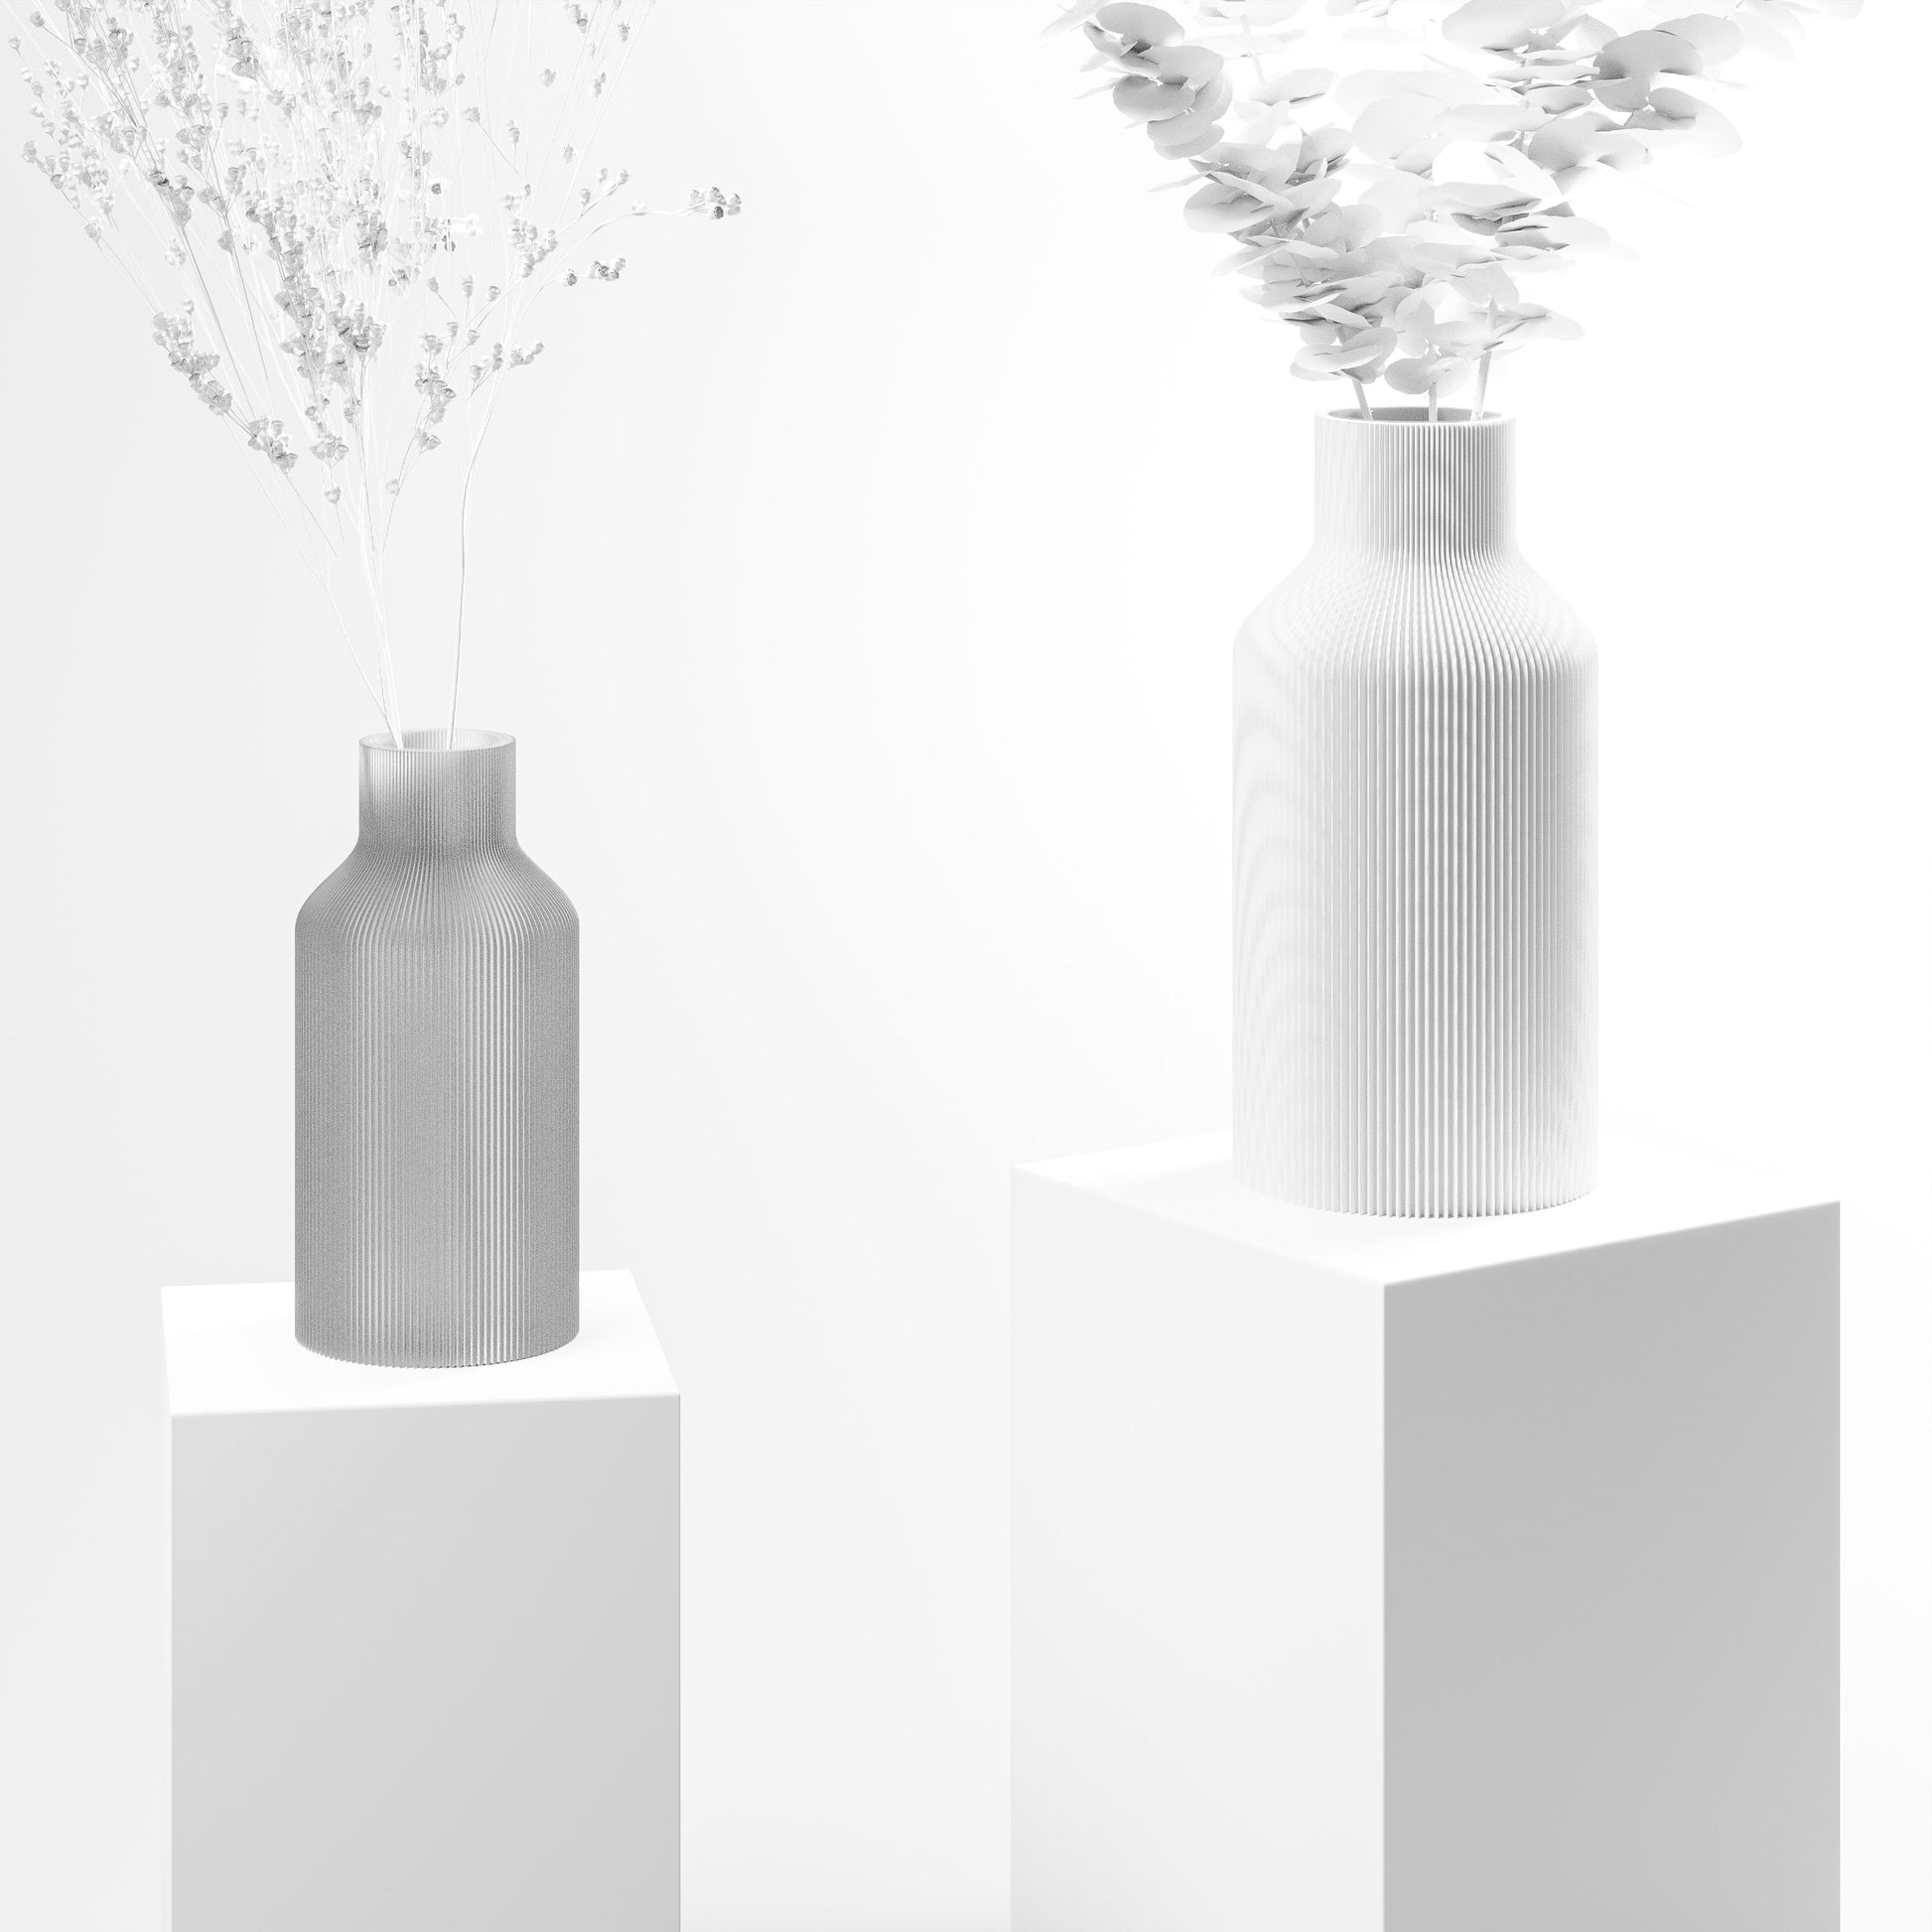 Stylische 3D Druck Vase mit feinen Rillen | 100% recyclebar | Form: Flasche | Farbe: weiss matt groß 